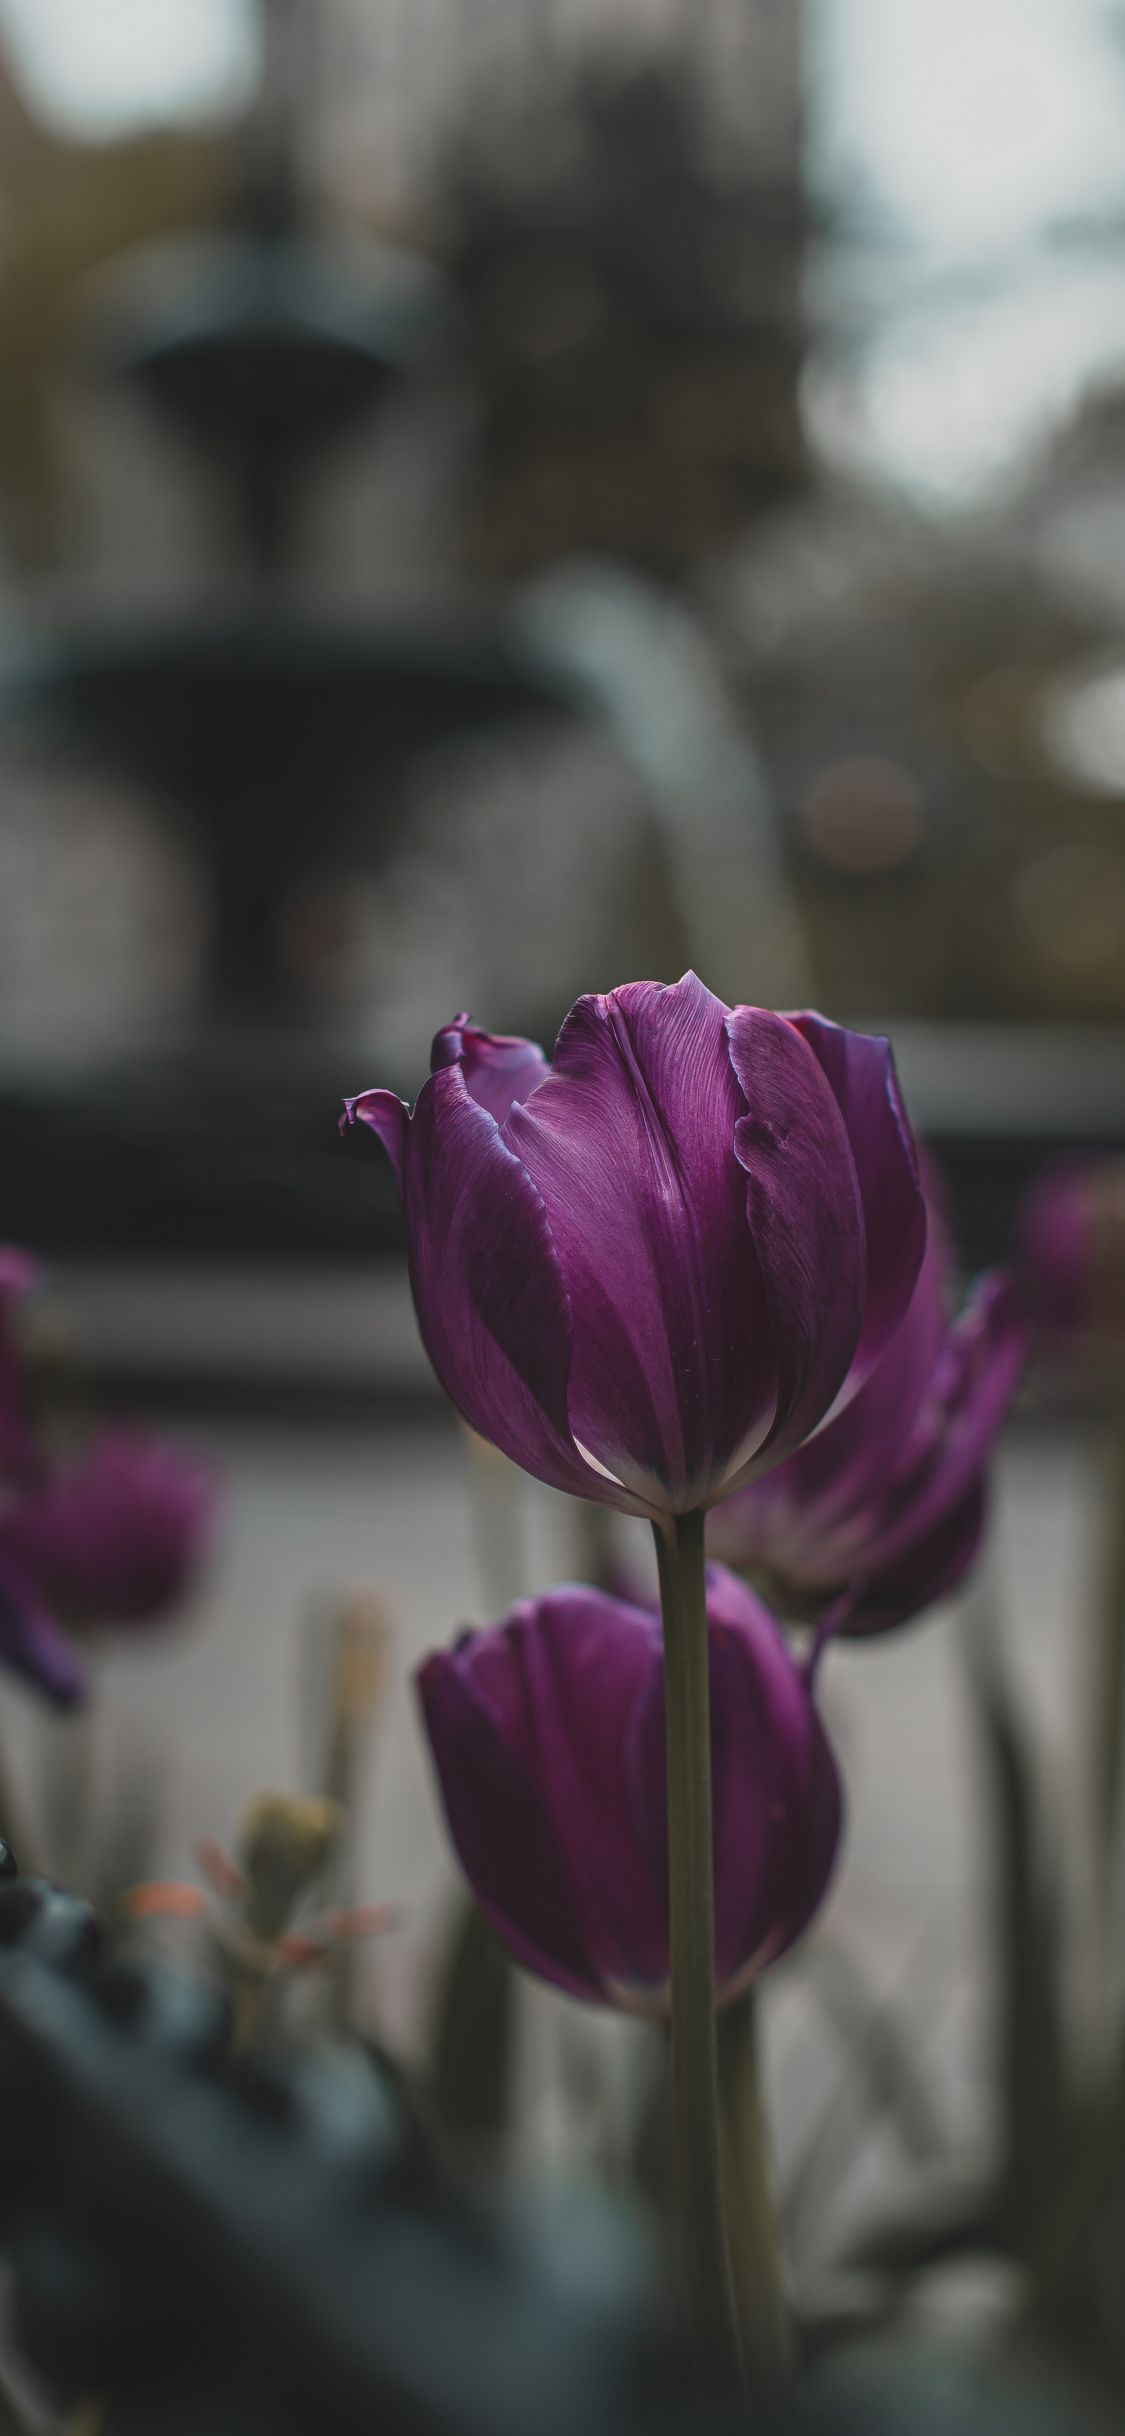 Hình nền hoa tulip